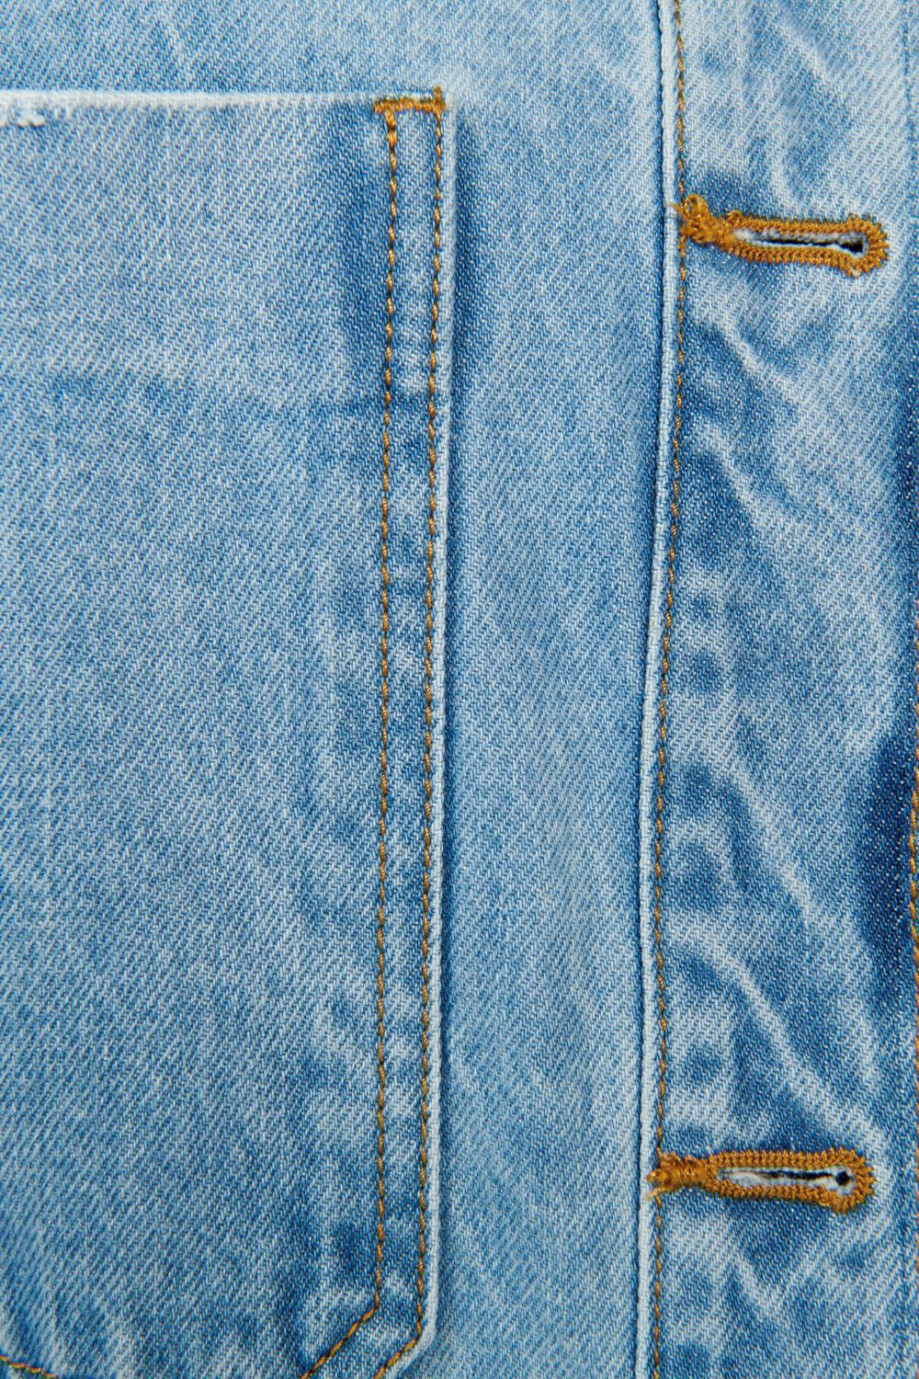 Chaqueta oversize azul clara de jean con bolsillos en el pecho